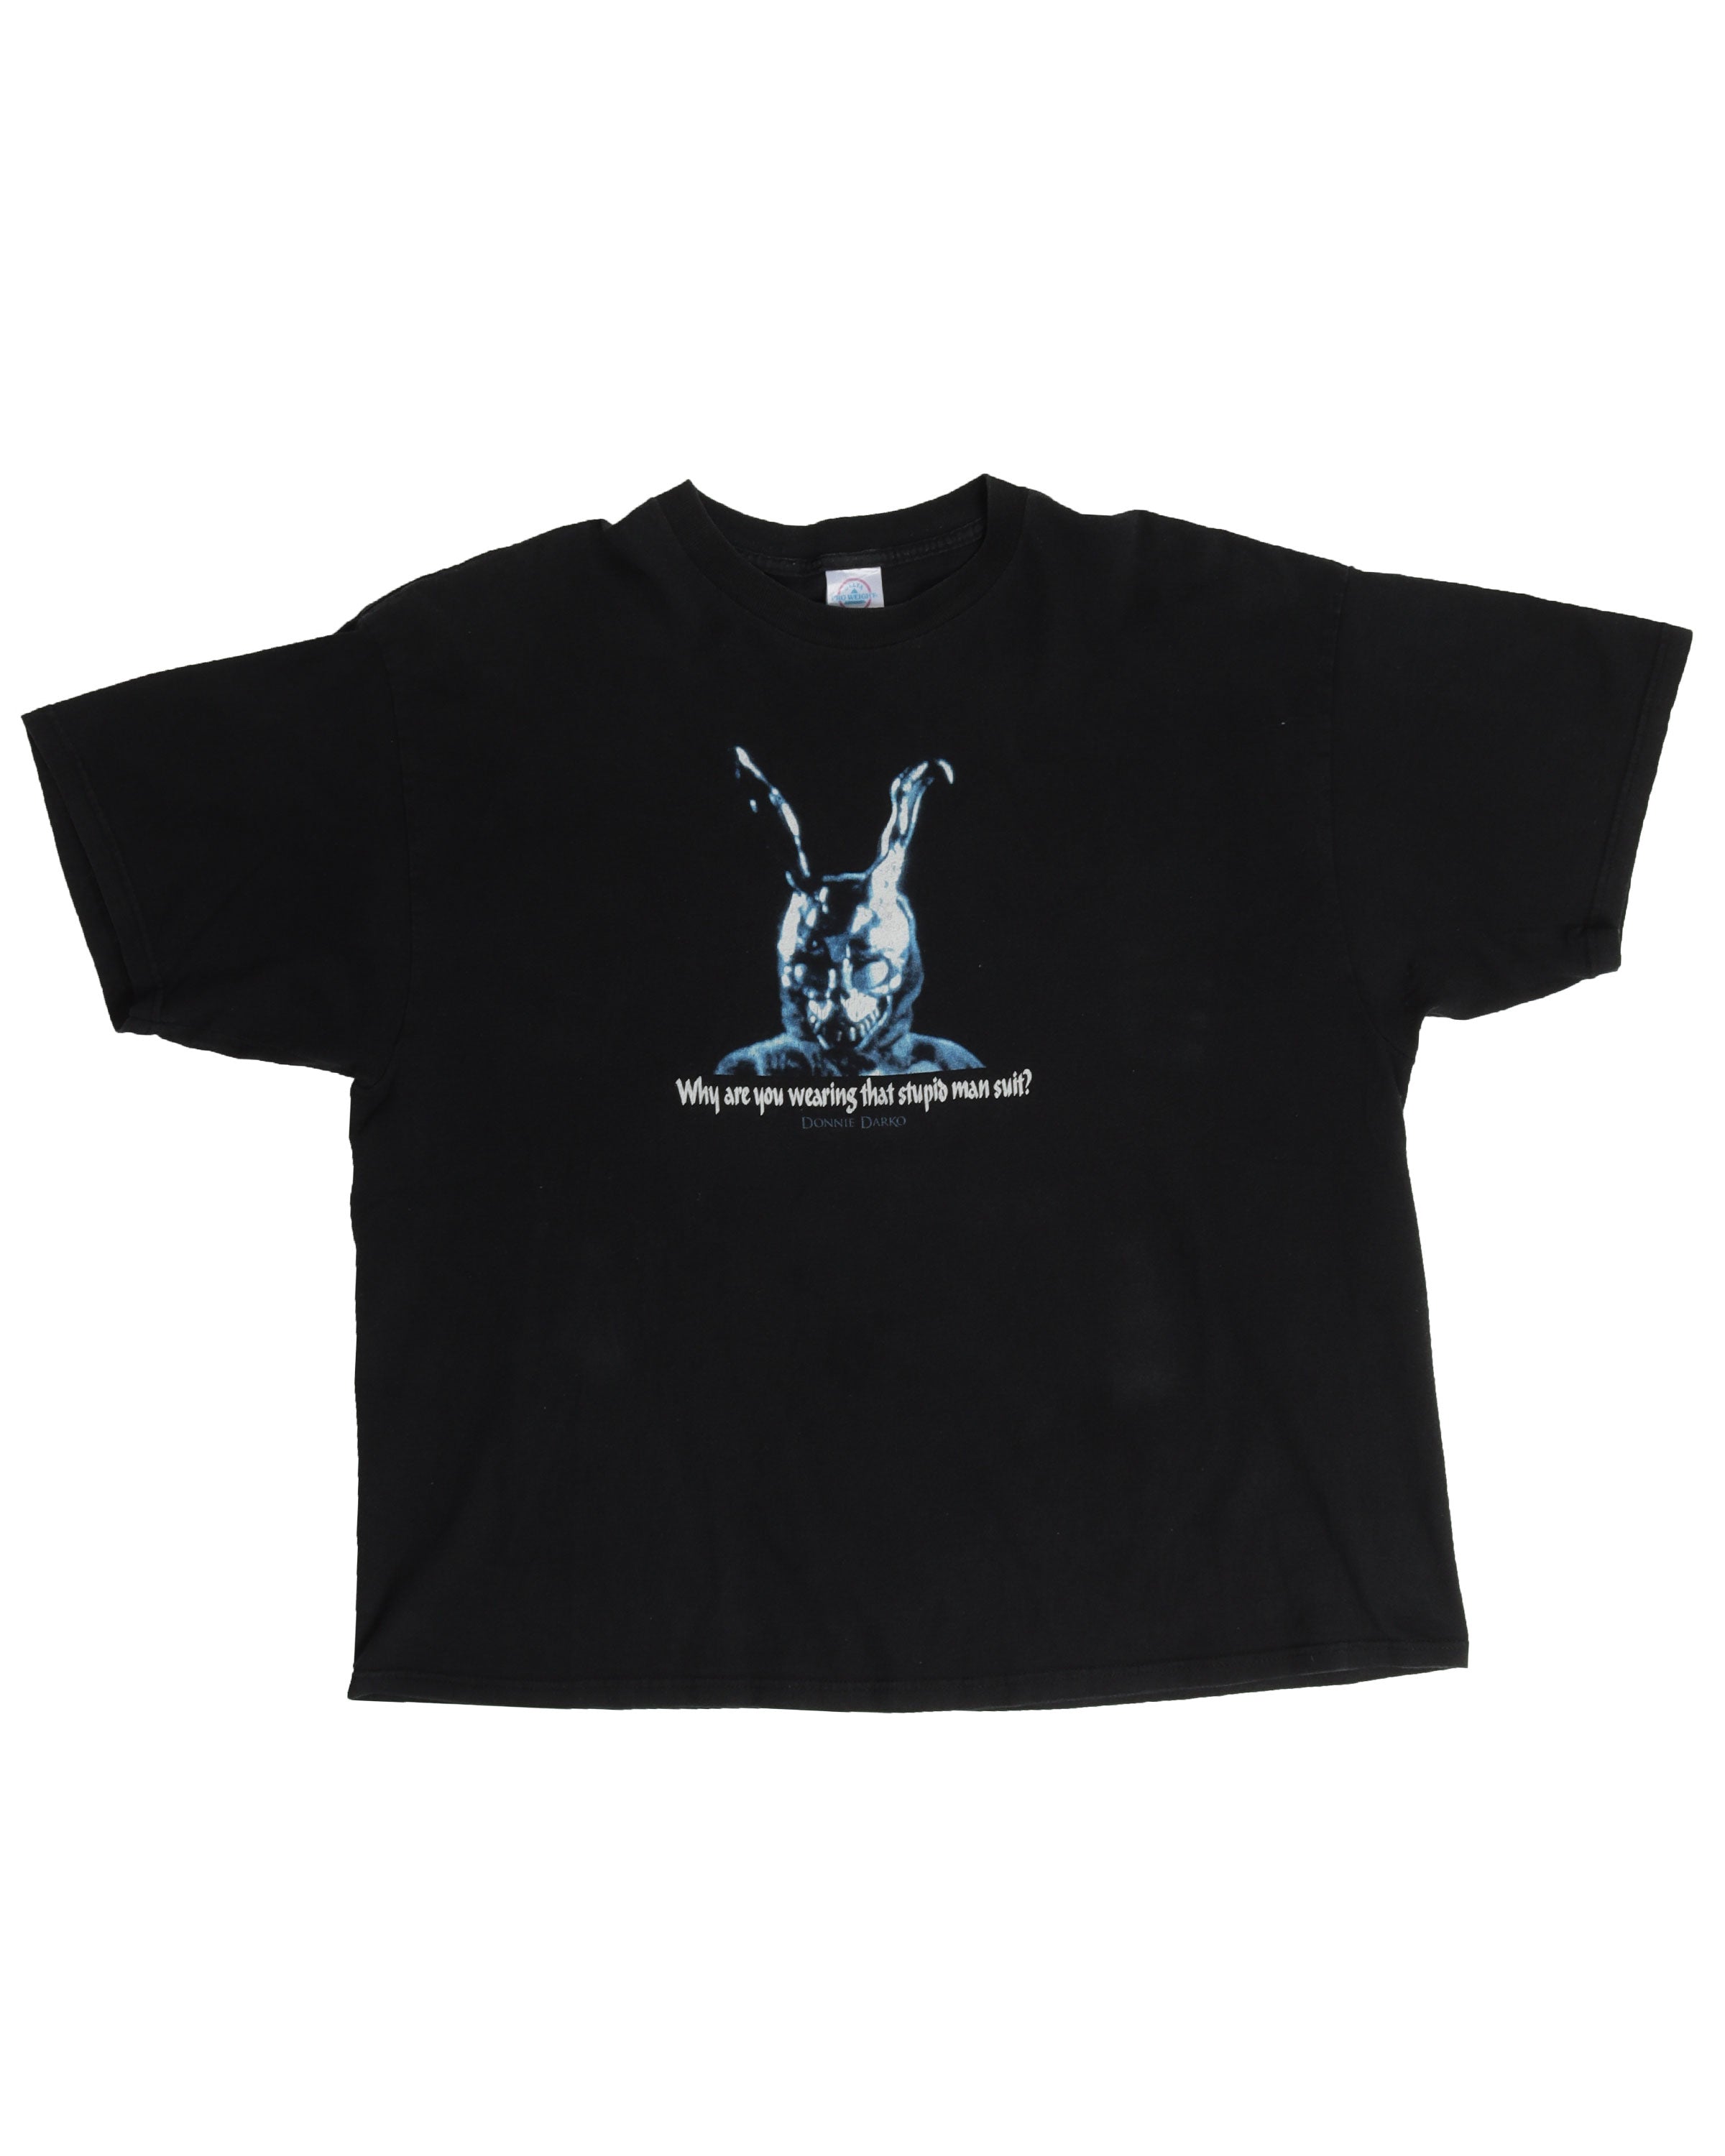 Donnie Darko Movie Promo T-Shirt